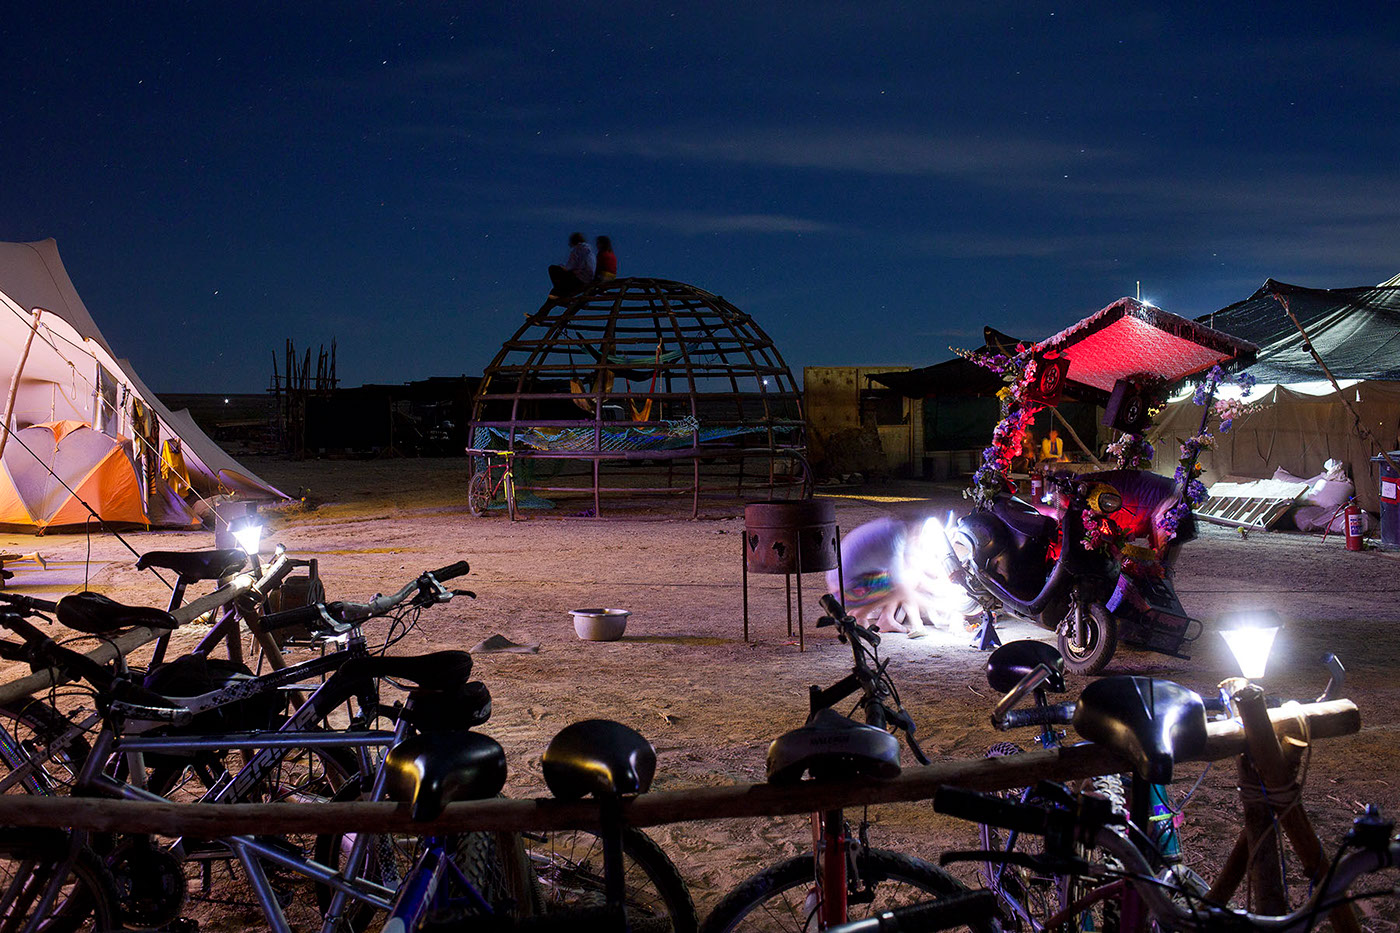 afrika burn Tankwa party Burning Man festival rig setup DPW radical self expression